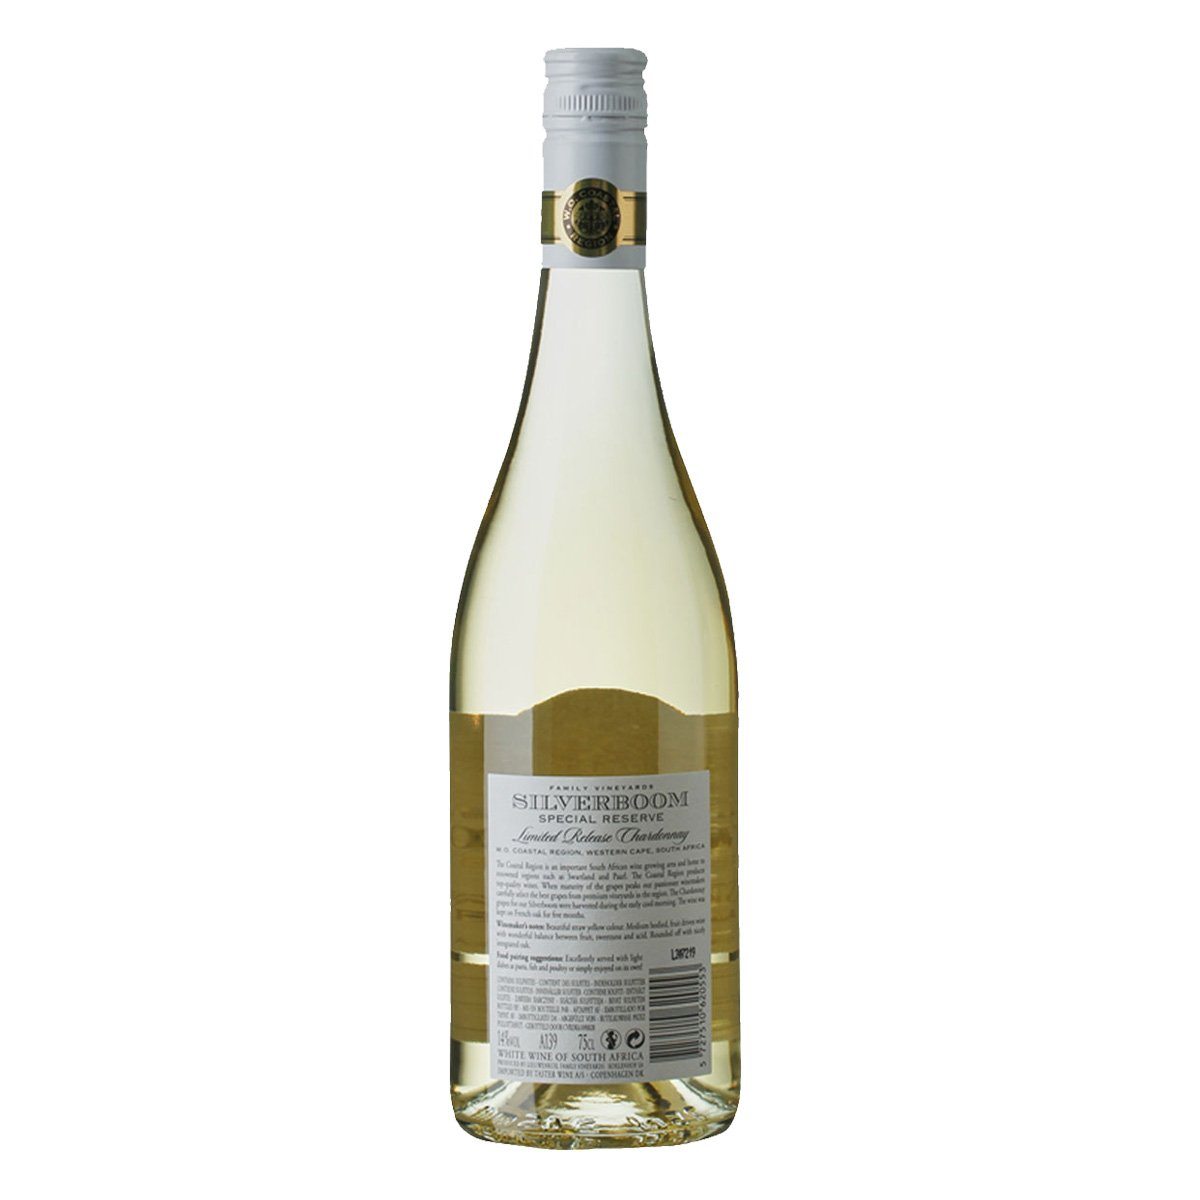 Silverboom Special Reserve Chardonnay Swartland 2019 - Bloom Concept